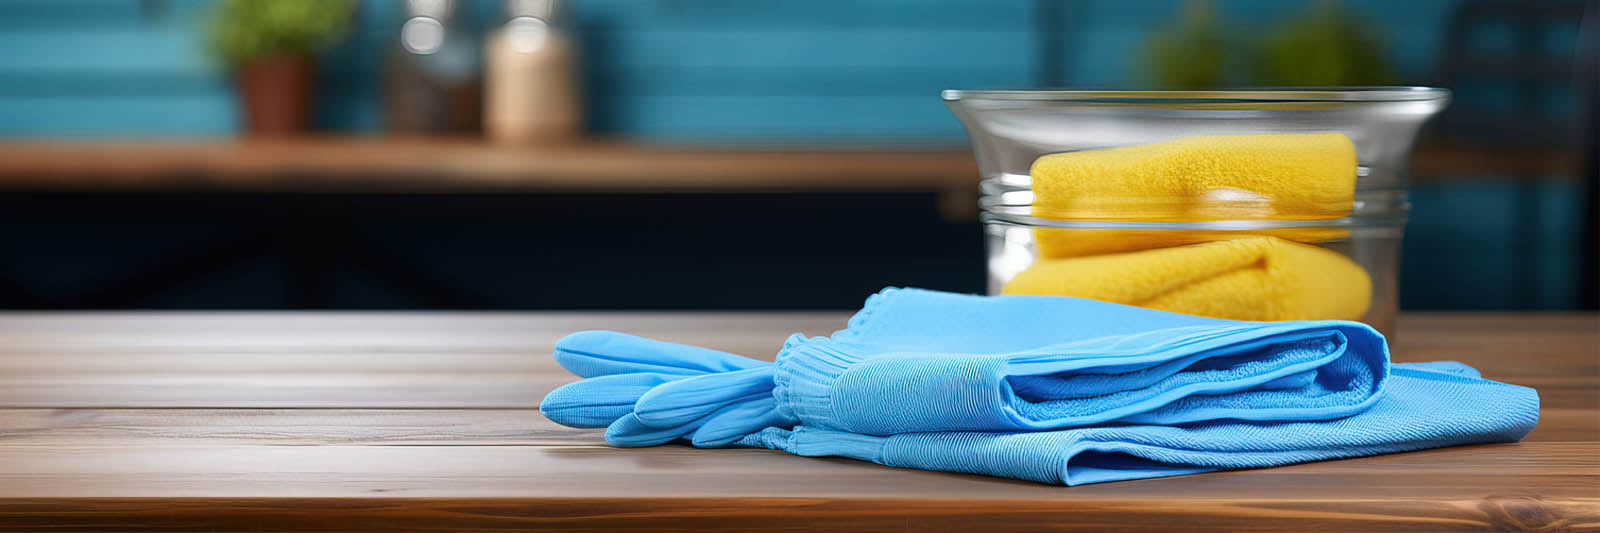 Gefaltete blaue Reinigungstücher und eine Glasschale mit gelben Reinigungstüchern dahinter auf einem Holztisch